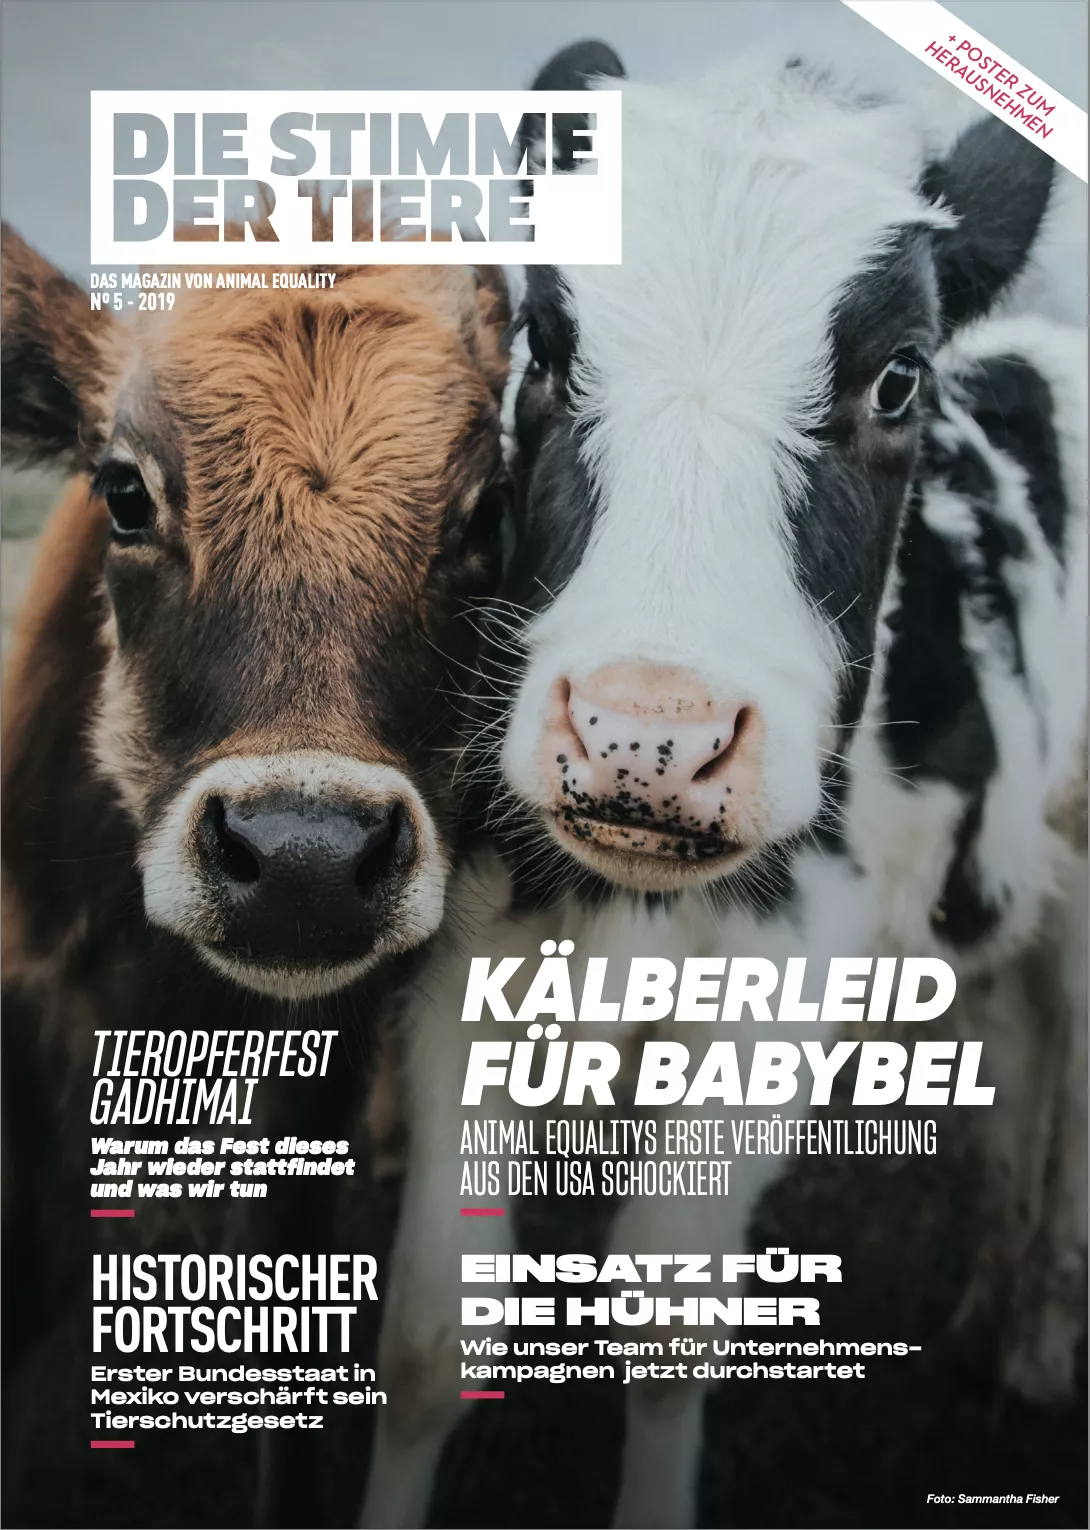 Die Stimme der Tiere - Das Magazin von Animal Equality Nr. 5 - 2019